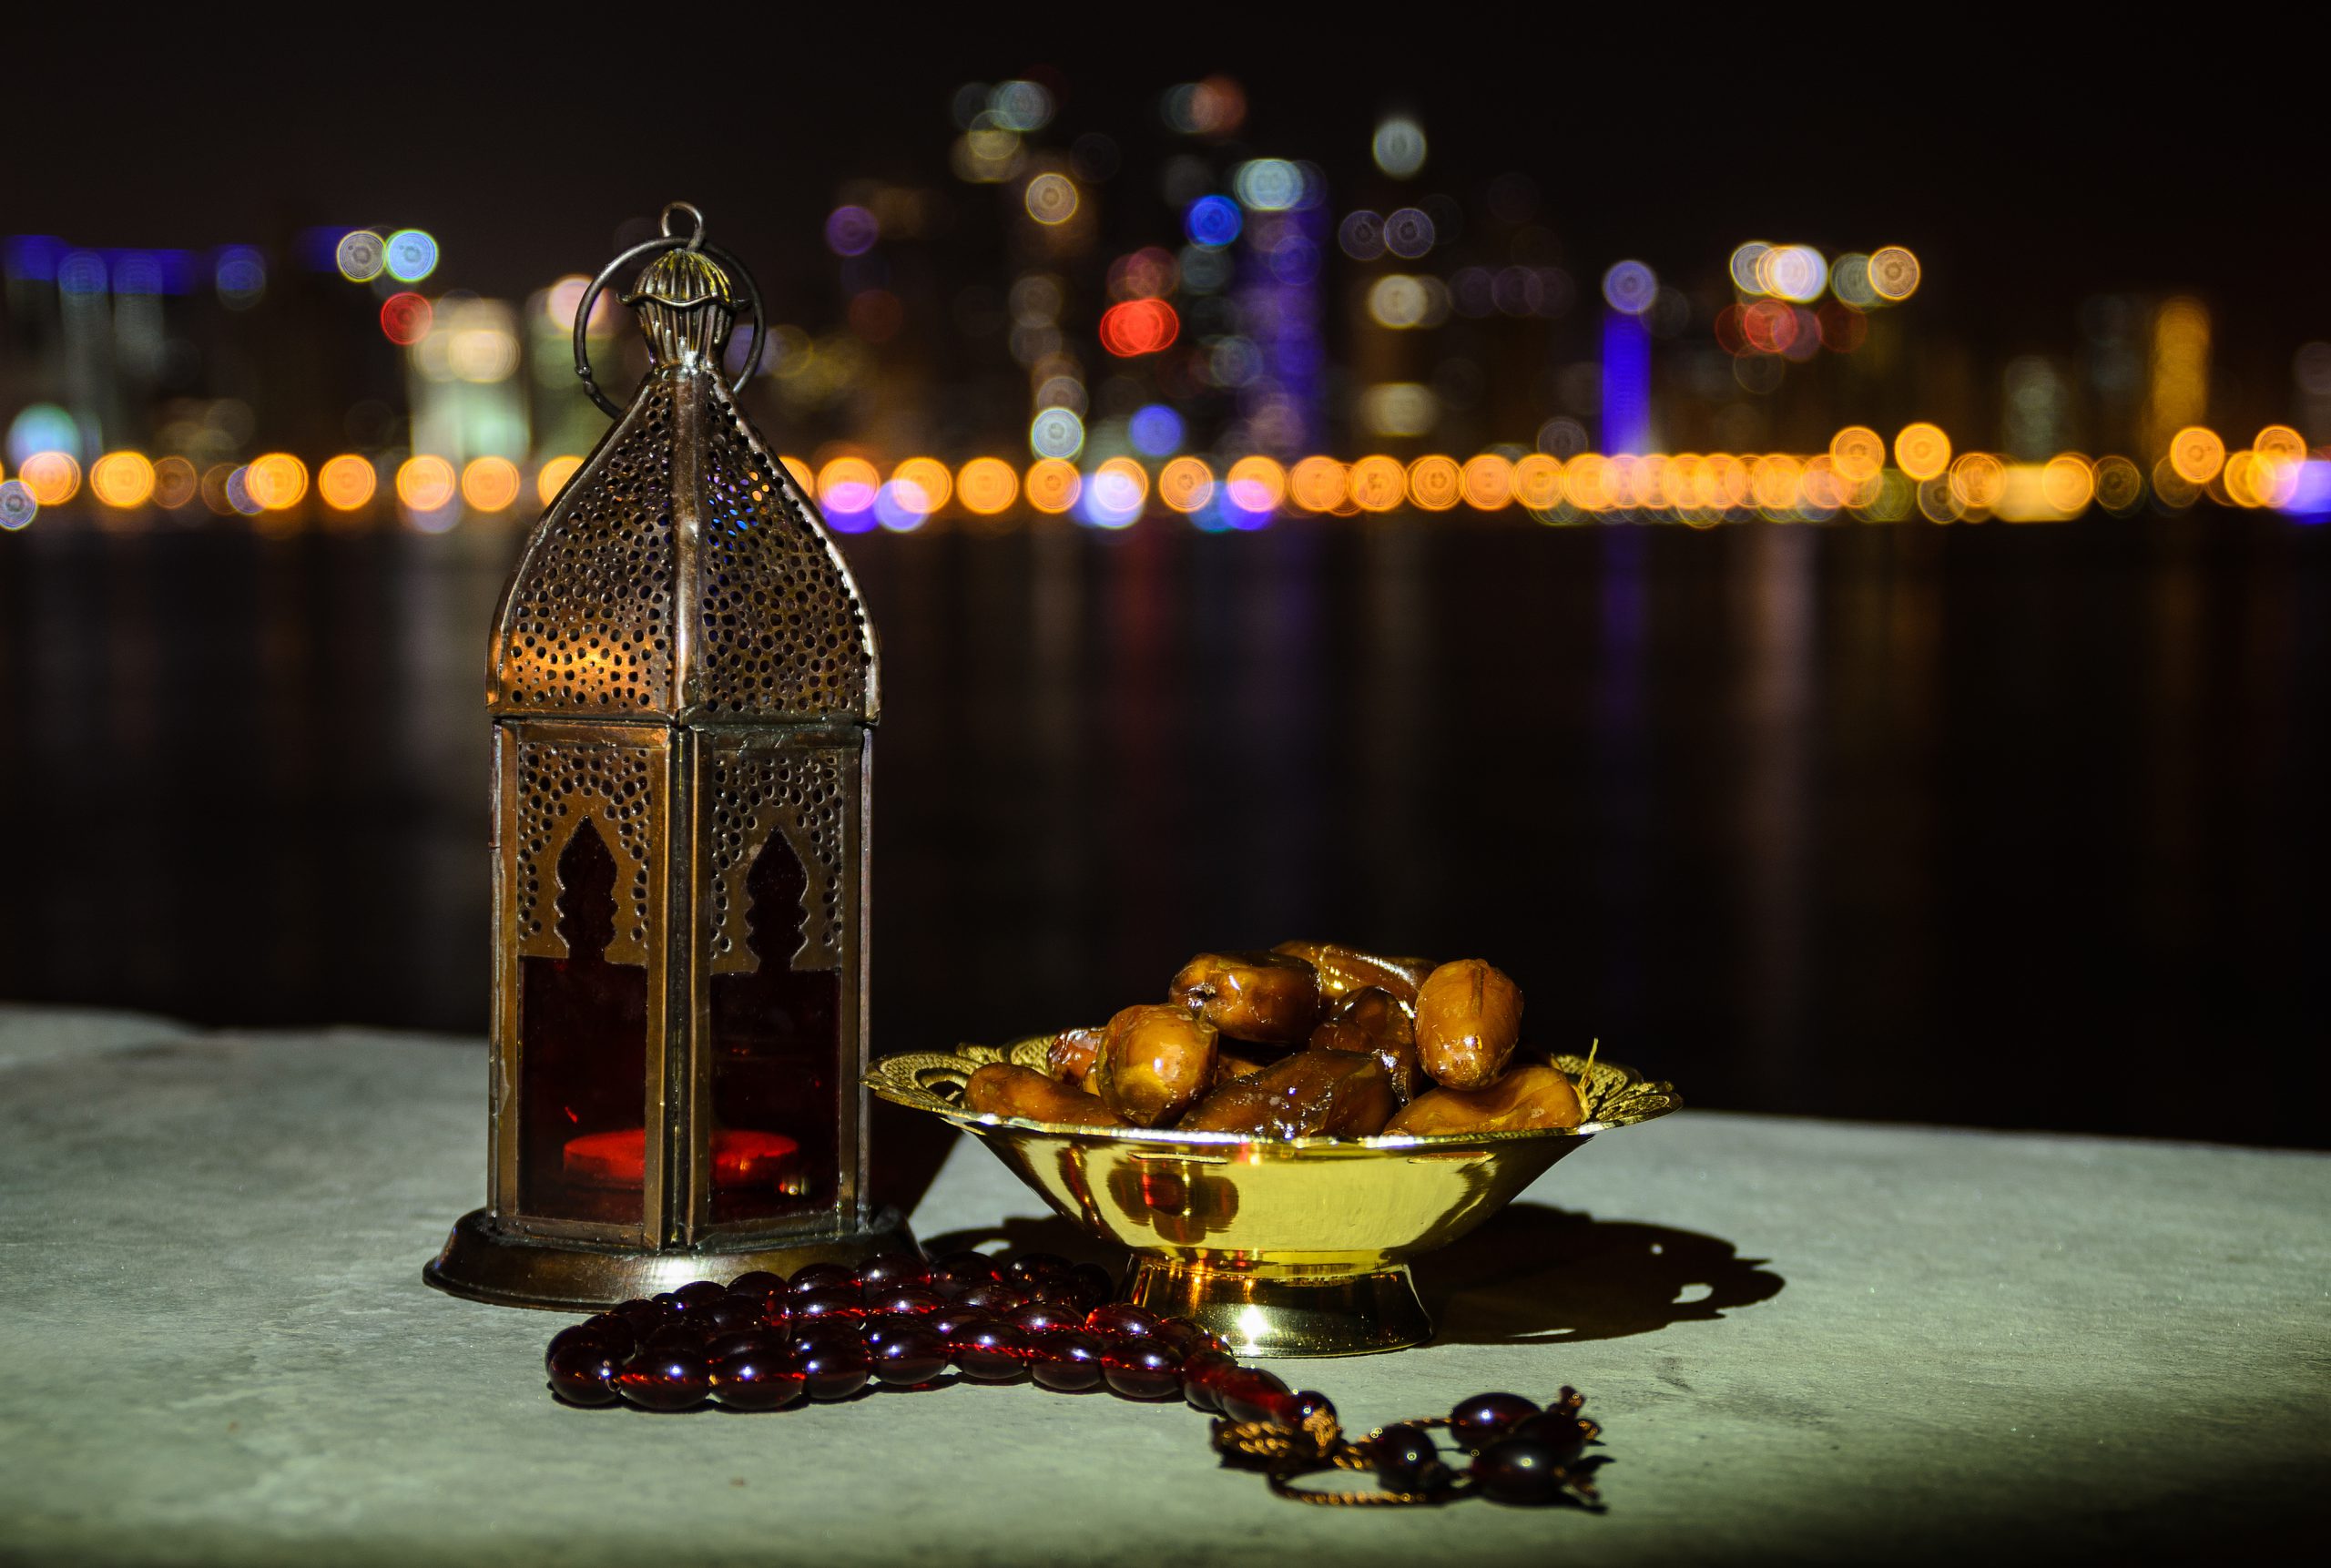 دعاء شهر رمضان مُستجاب وأهم شعائره في السعودية وفضل صيام الشهر الكريم